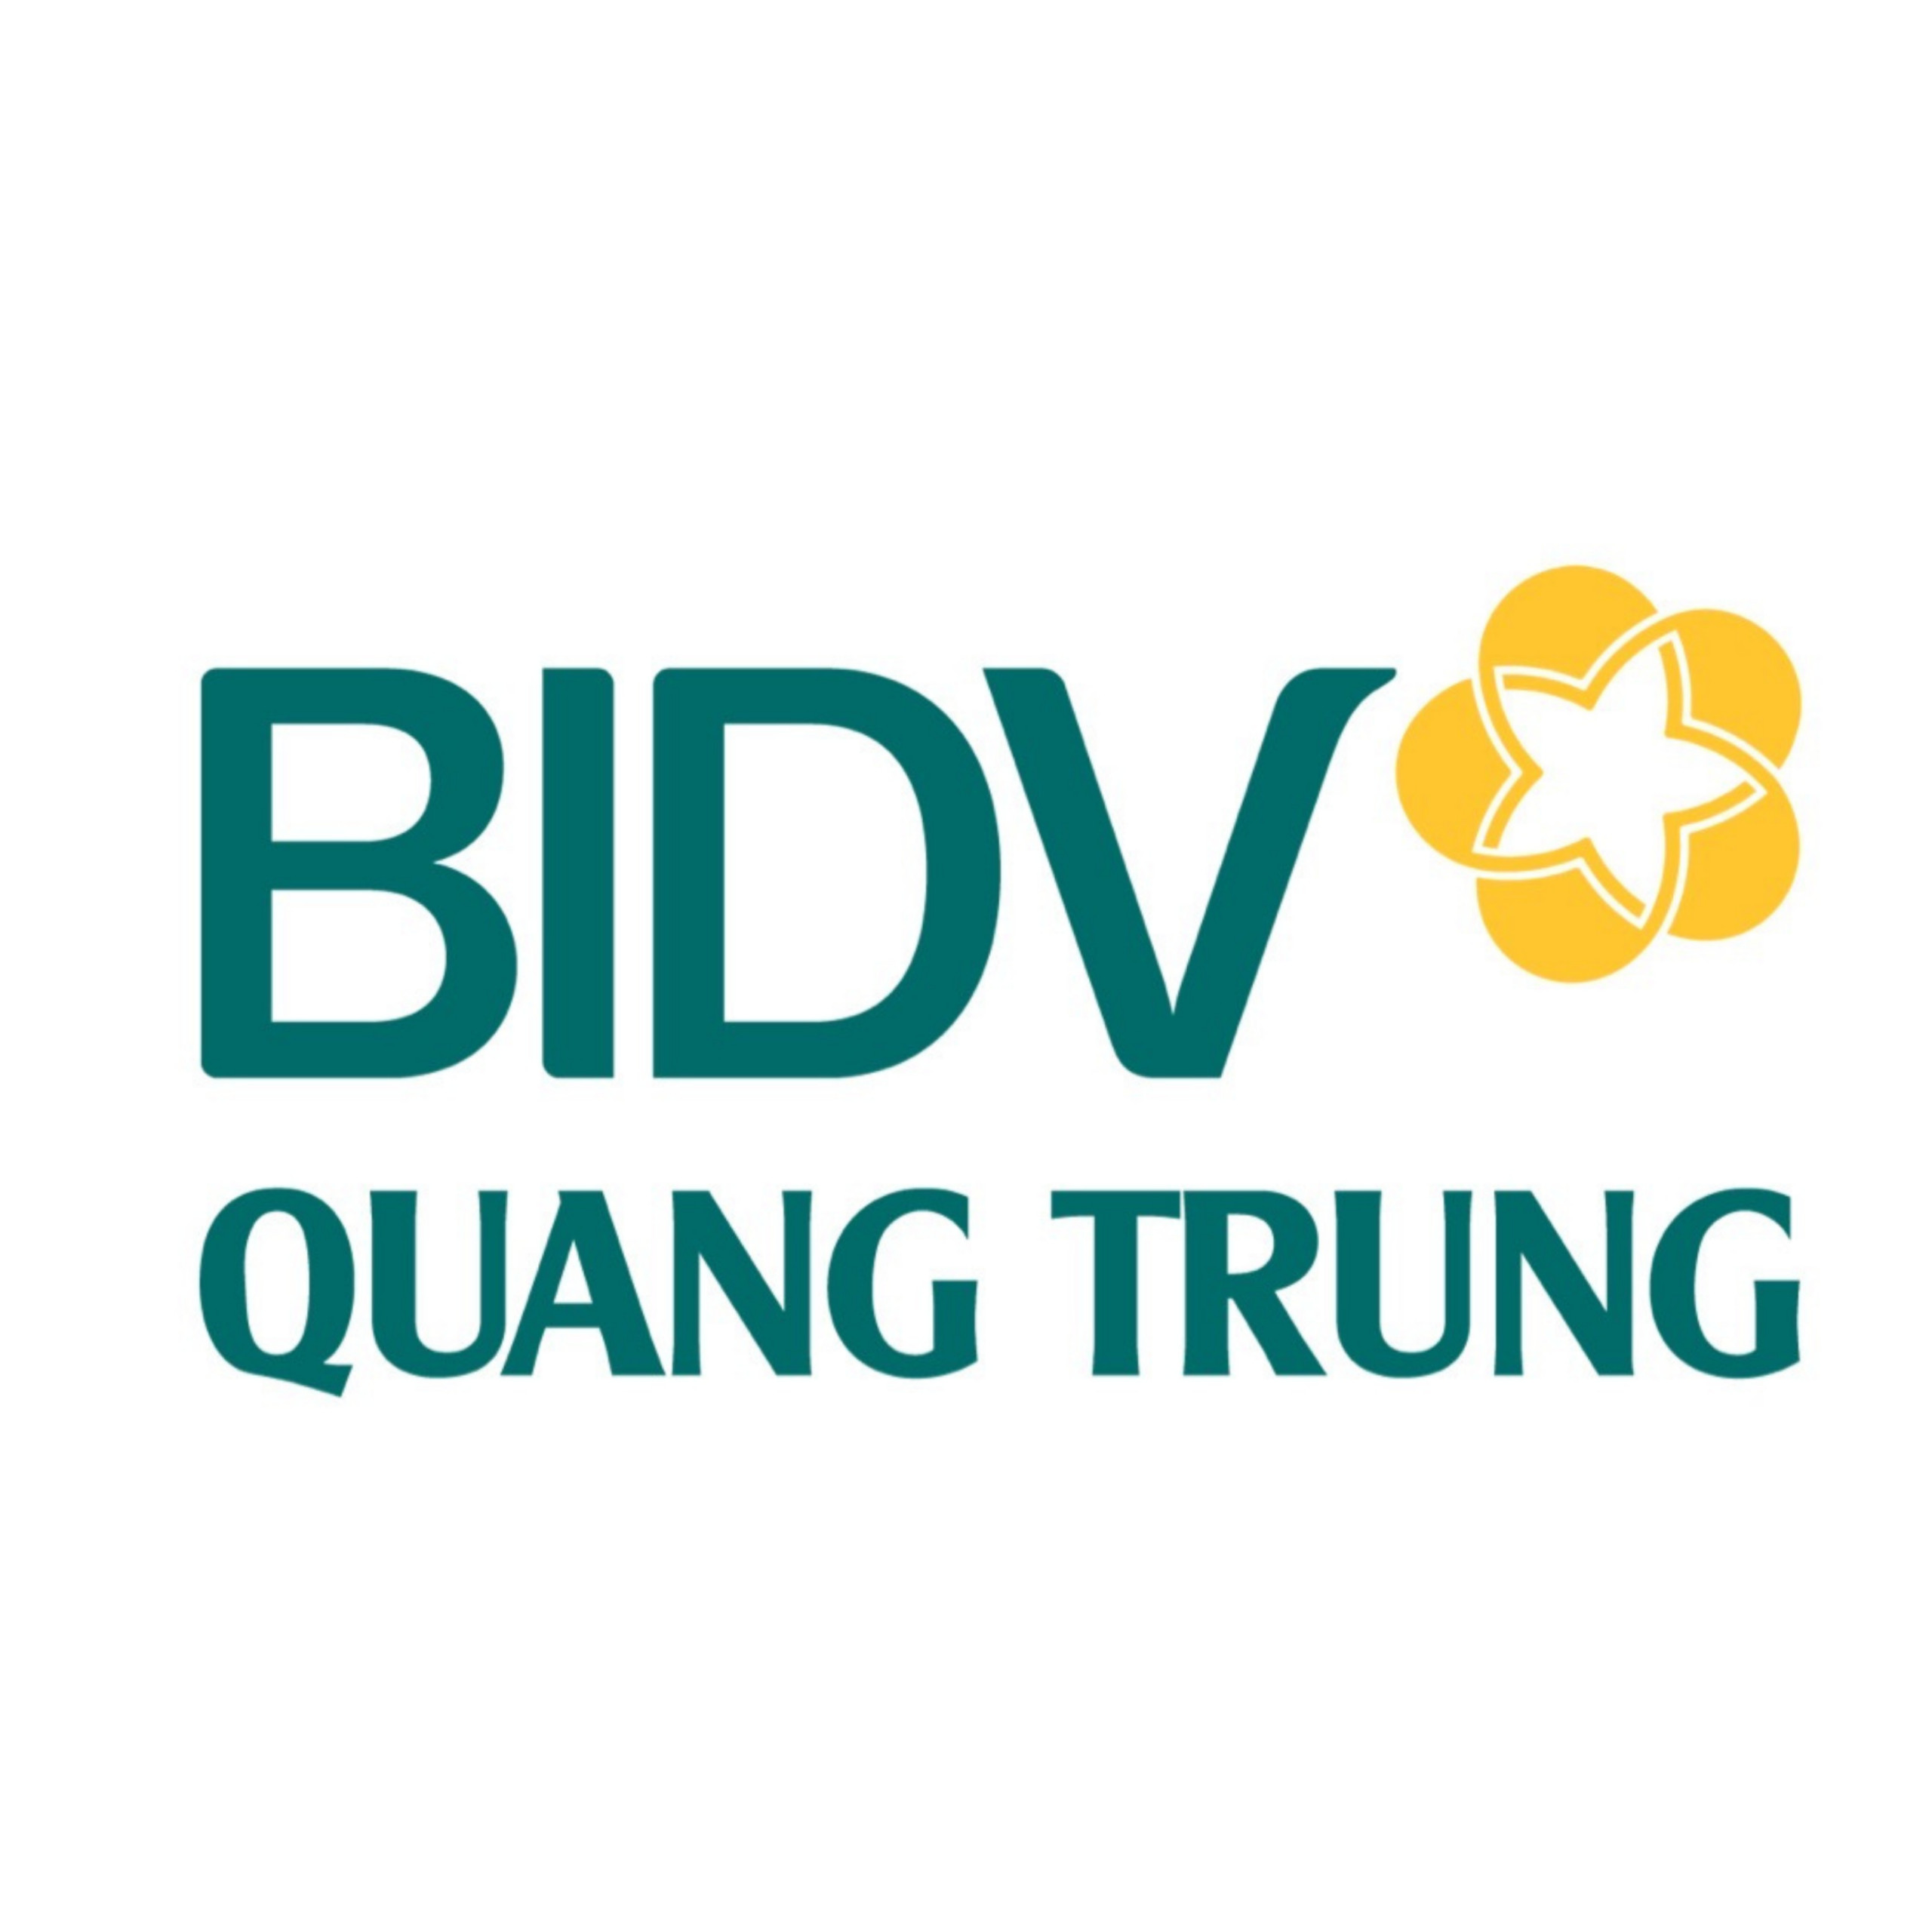 FC BIDV QUANG TRUNG